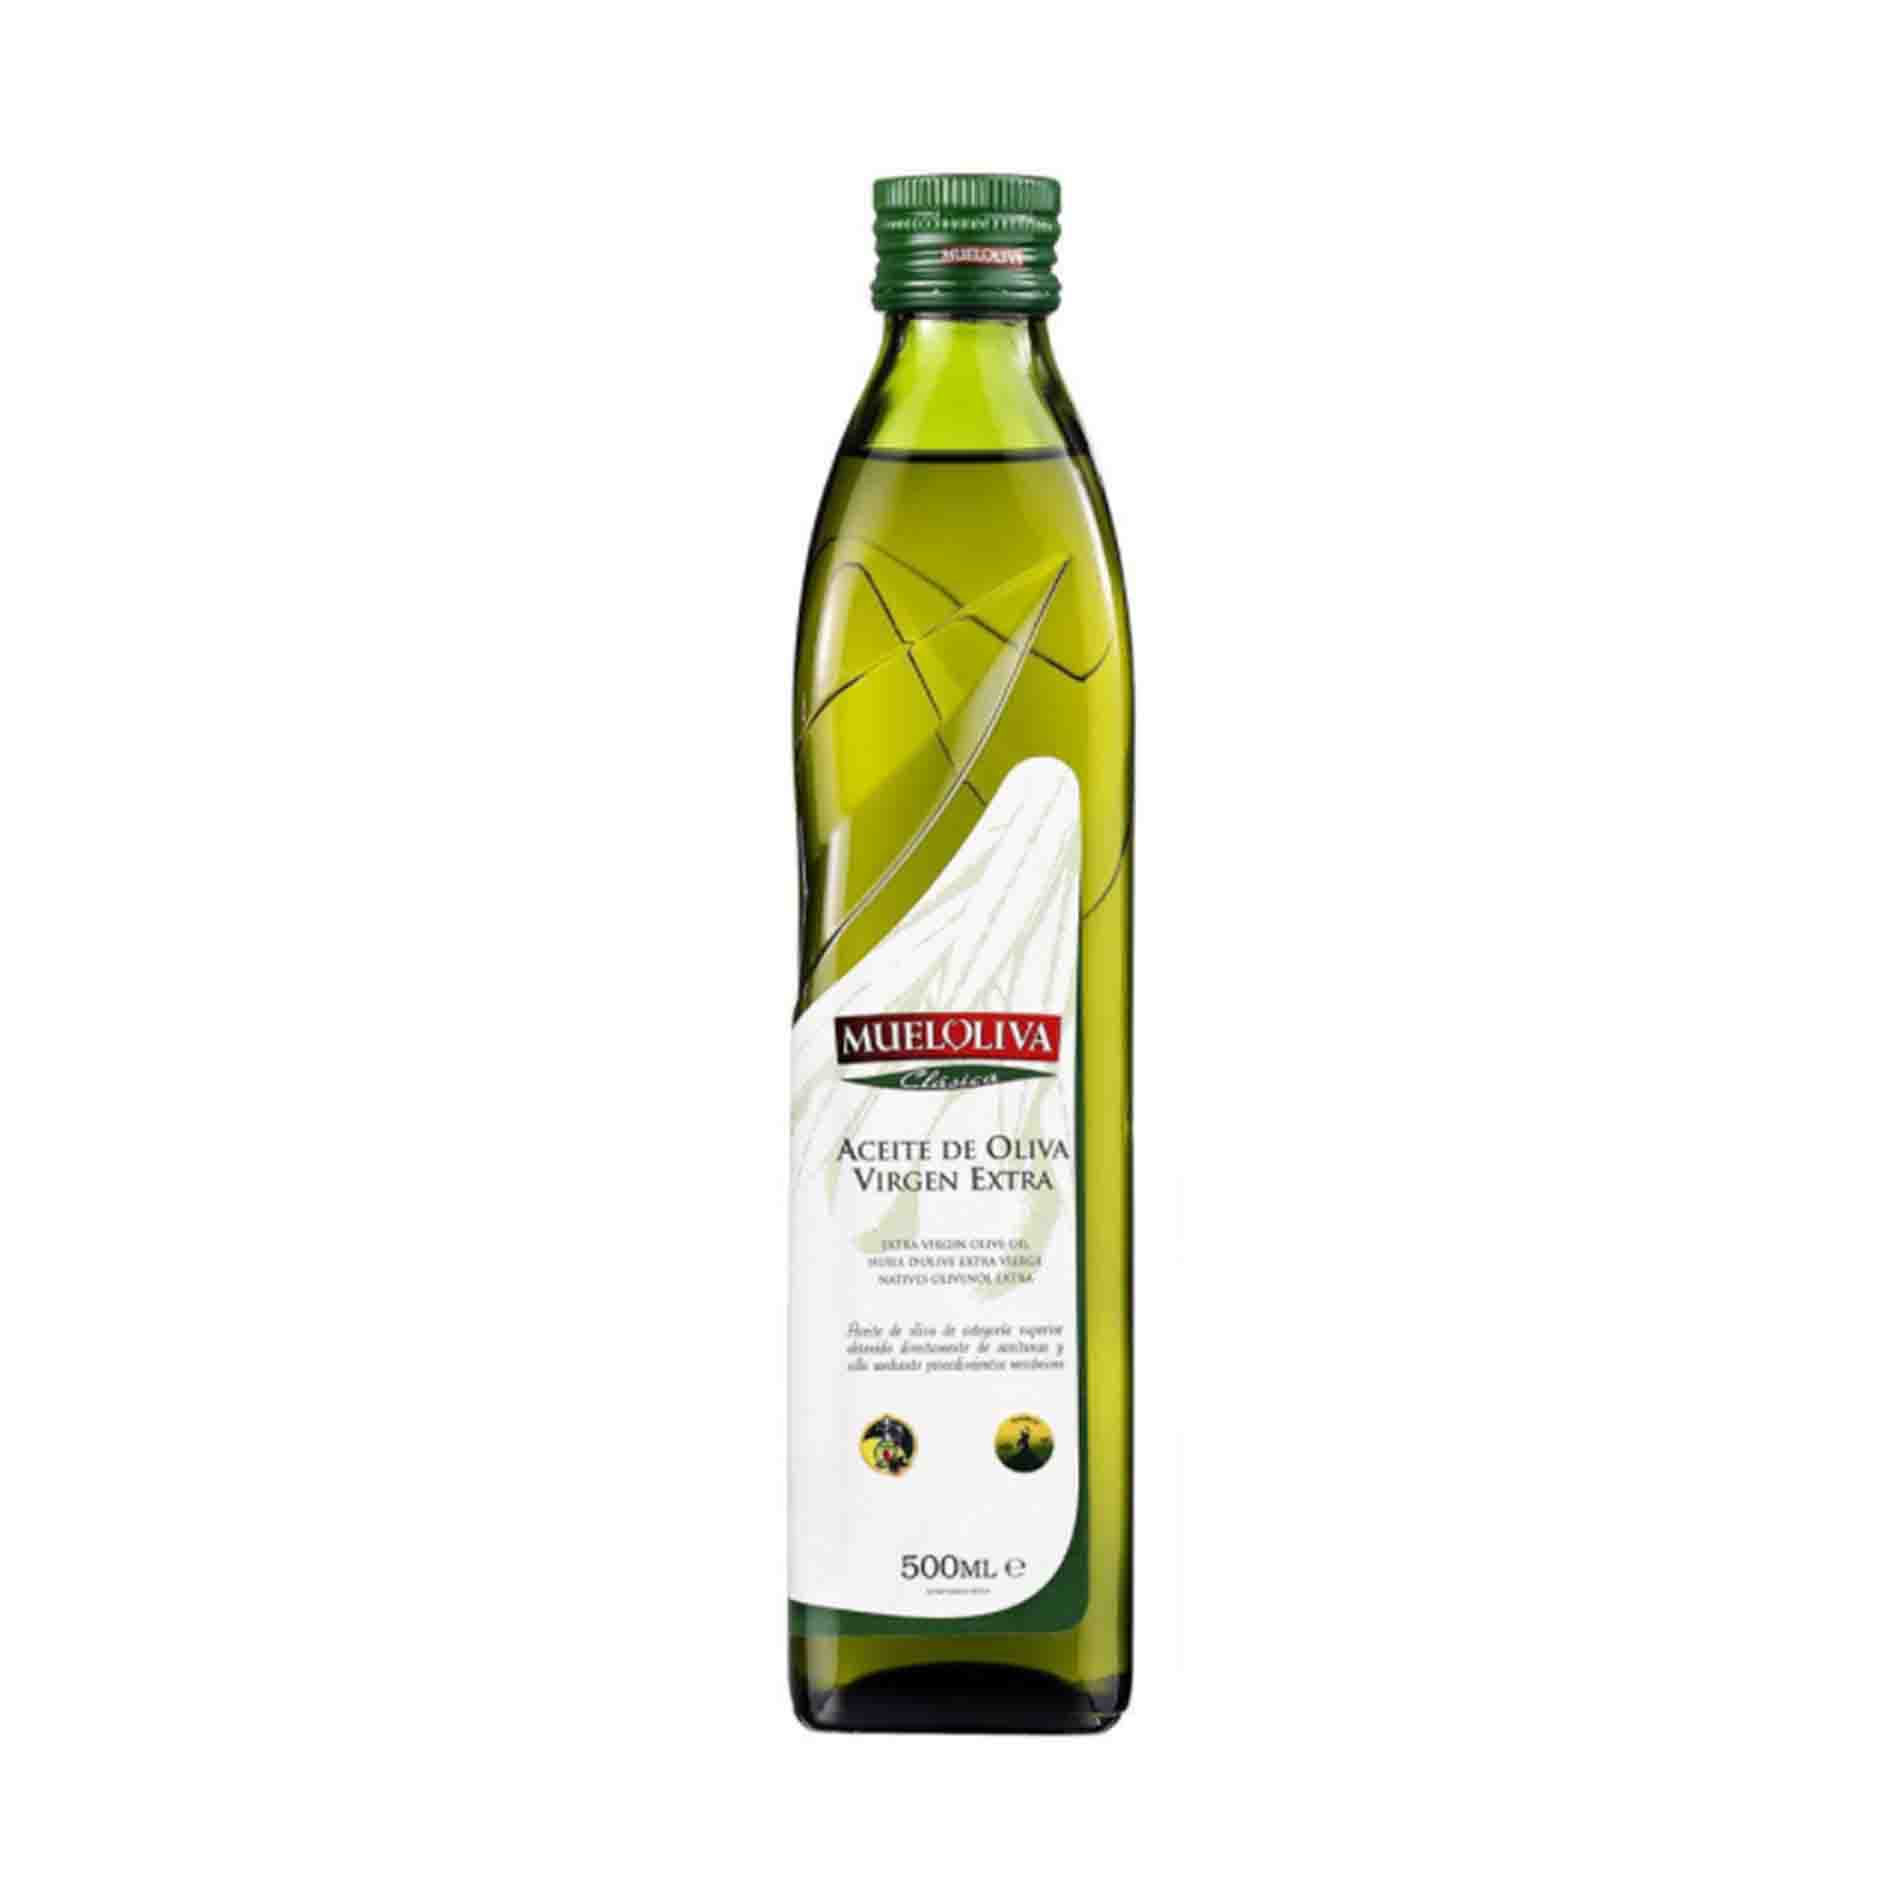 Оливковое масло 0.5. Масло оливковое Extra Virgin 500 ml. Extra Pomace оливковое масло. Mueloliva clasica 1 л стекло. Оливковое масло Экстра Вирджин.